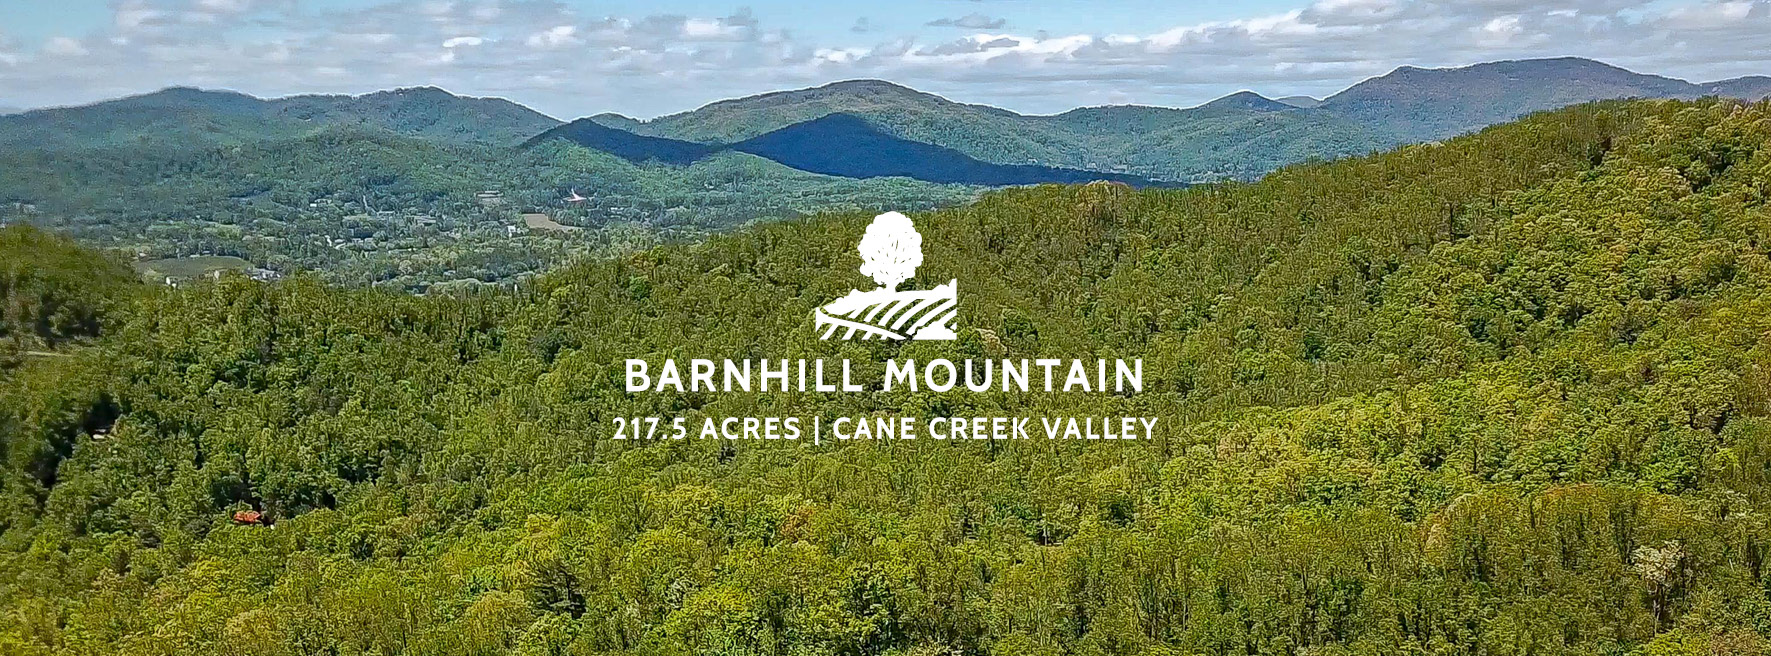 Barnhill Mountain Asheville